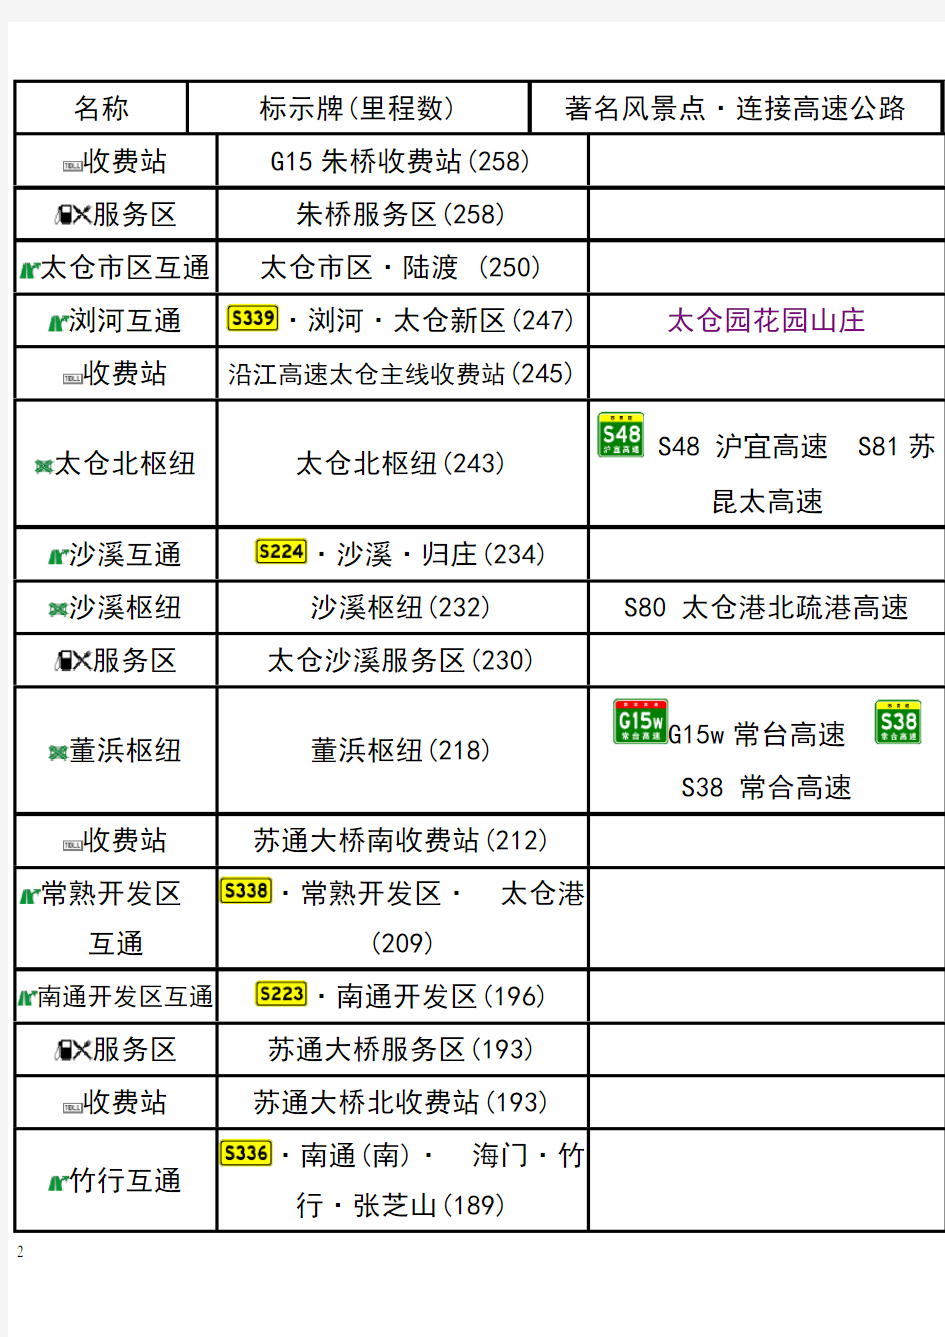 G15沈海高速(江苏段)出入口、服务区、里程数及风景区